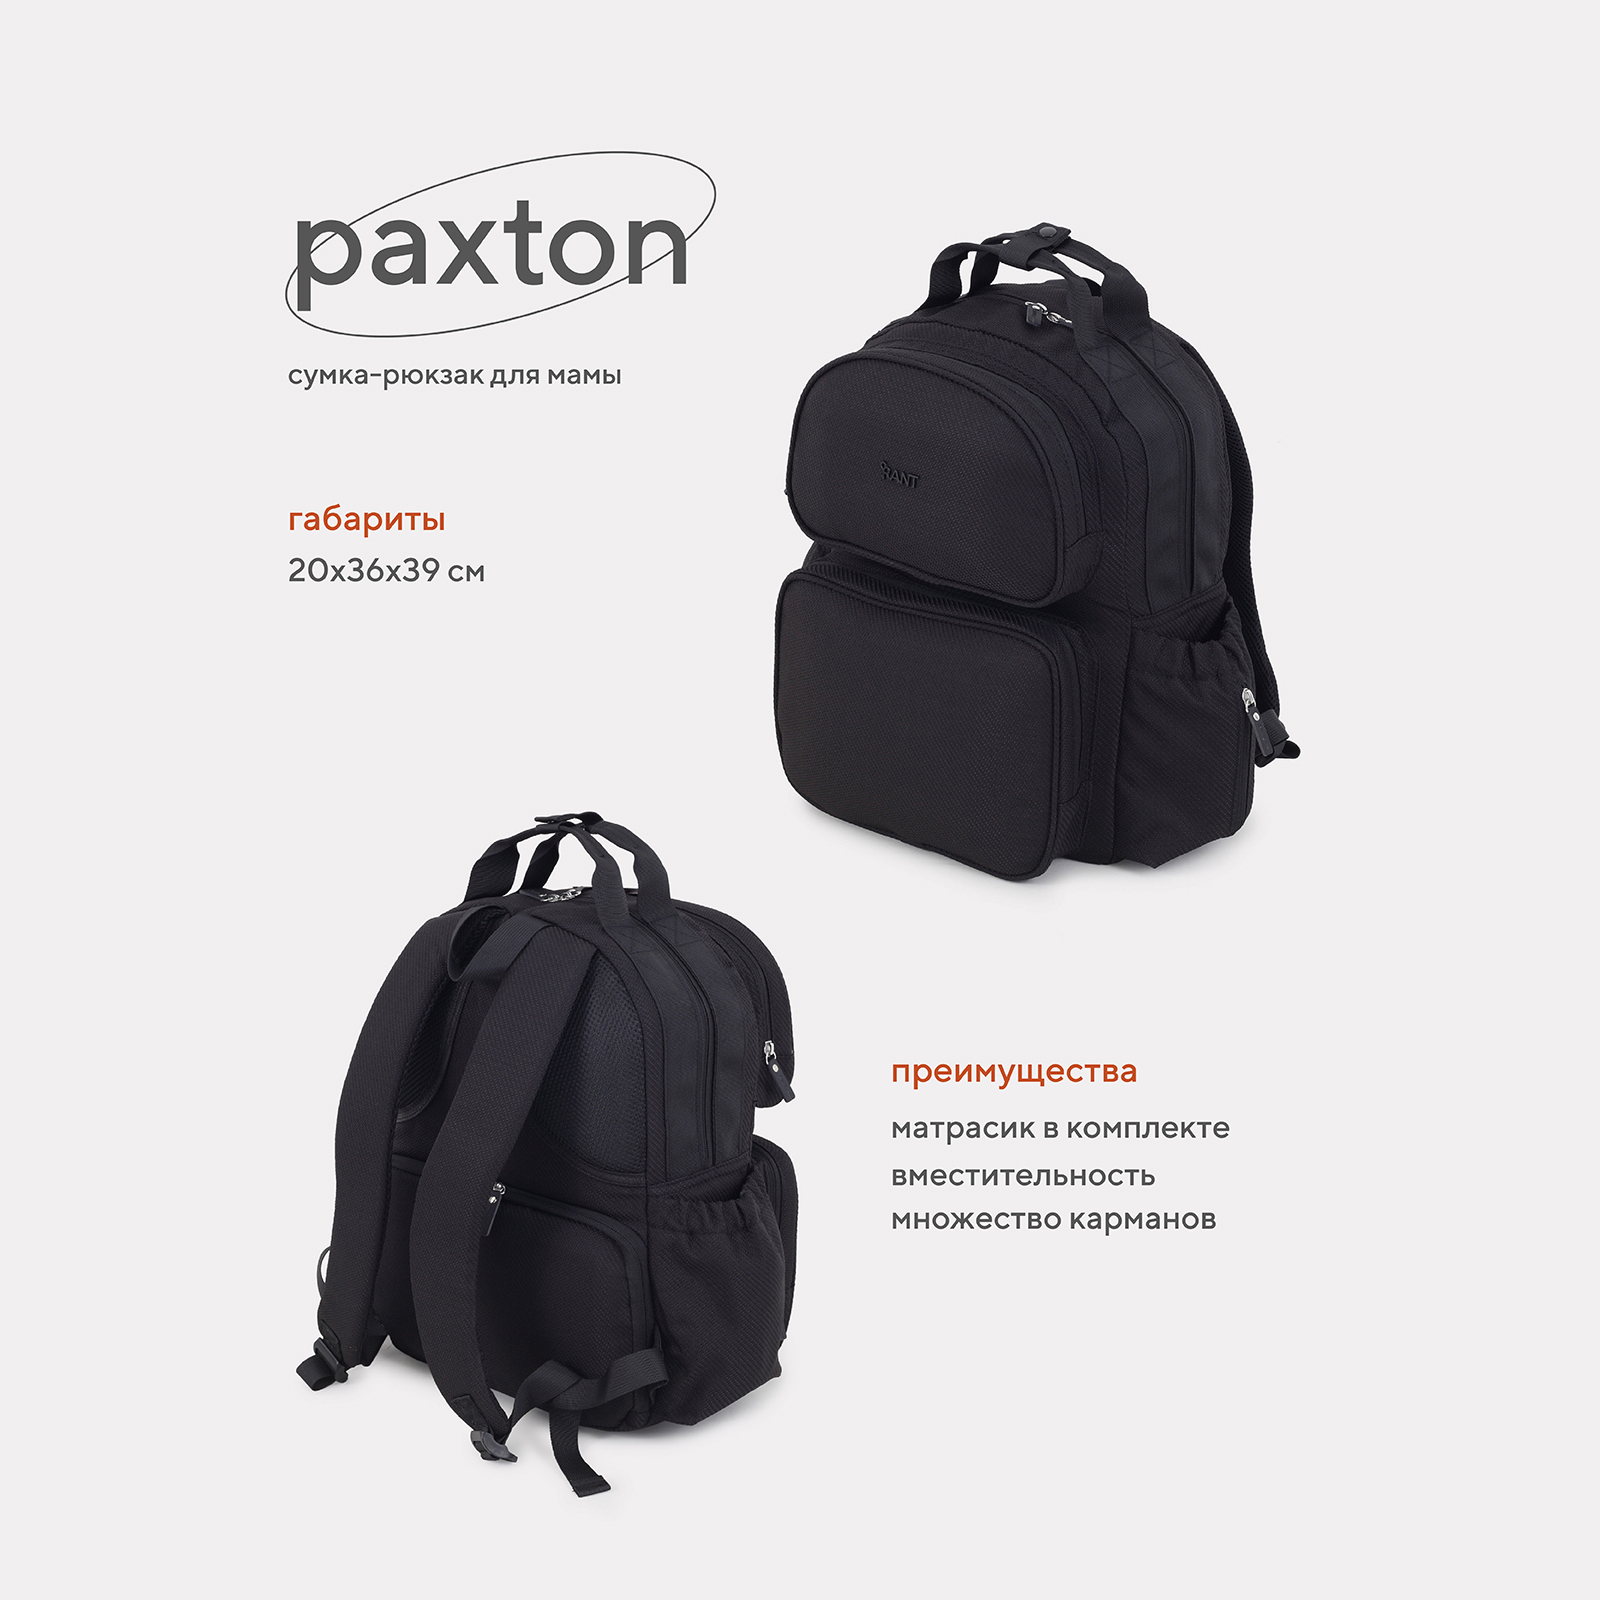 Сумка-рюкзак для мамы RANT Paxton RB008 Black сумка рюкзак для мамы easygrow vandra bag black pu 10200115